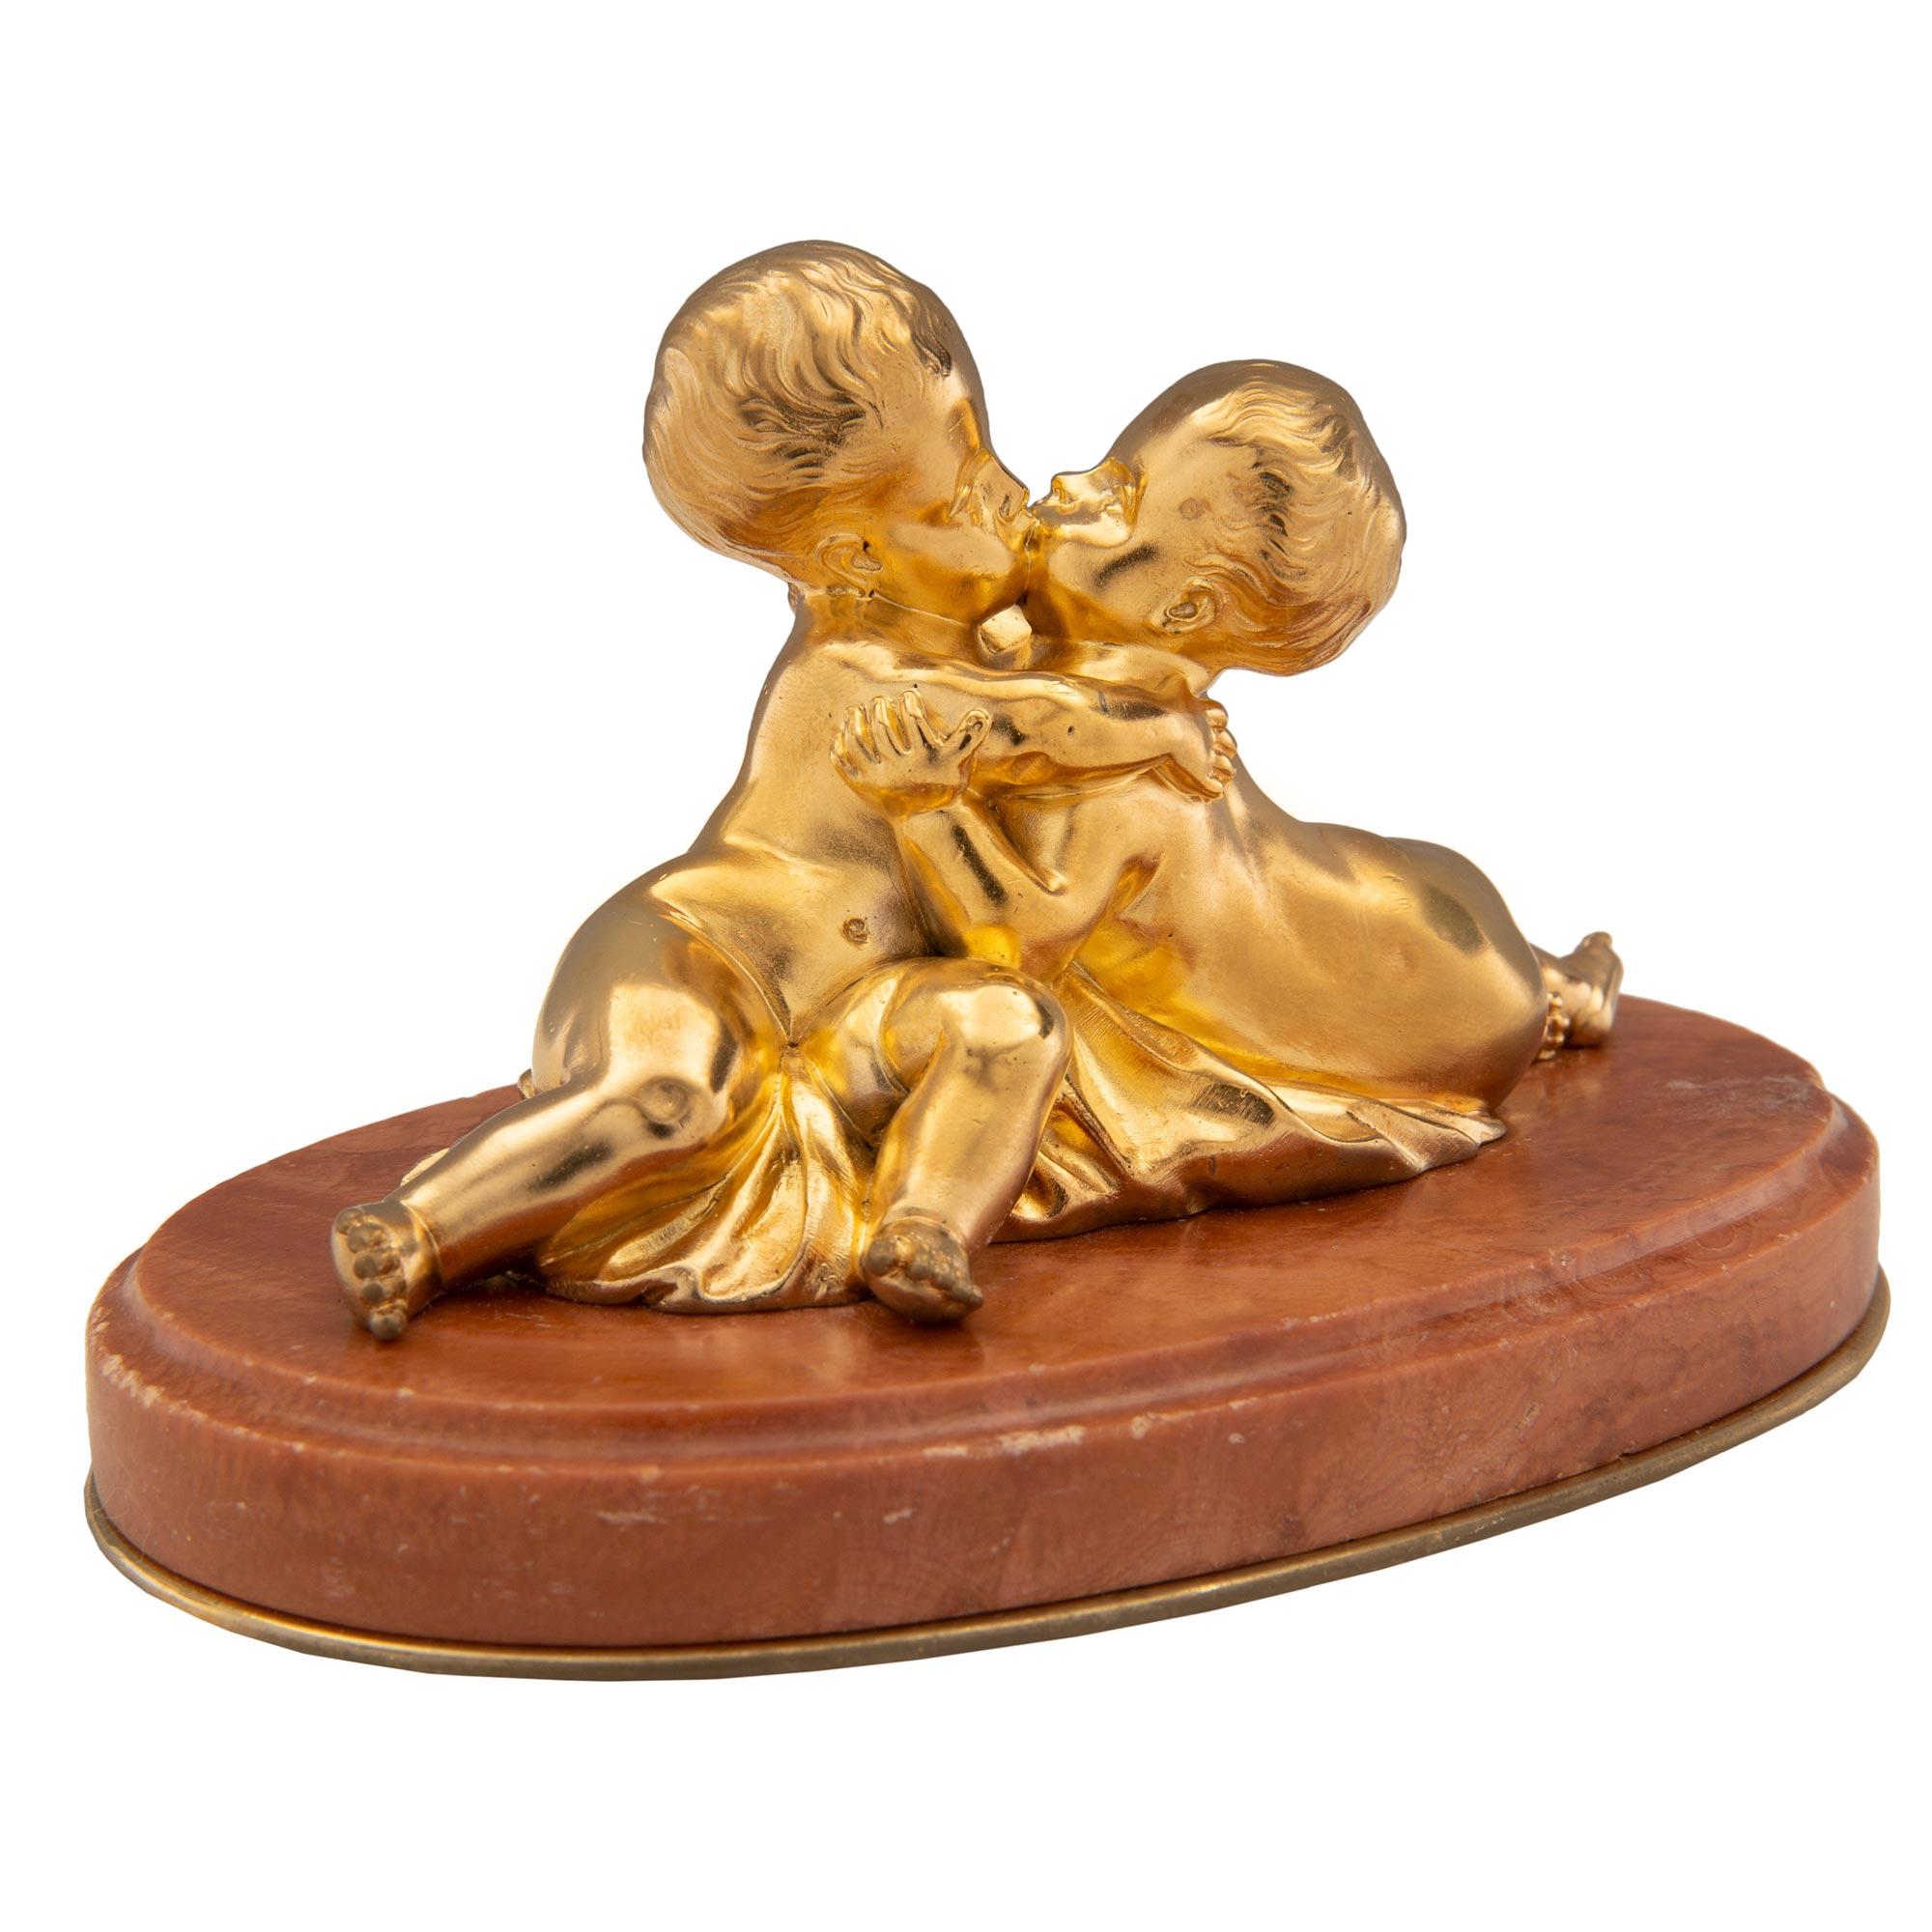 Charmante statue/ presse-papier de style Louis XVI du 19ème siècle en bronze doré et marbre Rouge Royale, signée F. Costa. La statue est surélevée par une base ovale en Rouge Royale avec une bordure mouchetée et un fin filet de fond en bronze doré.